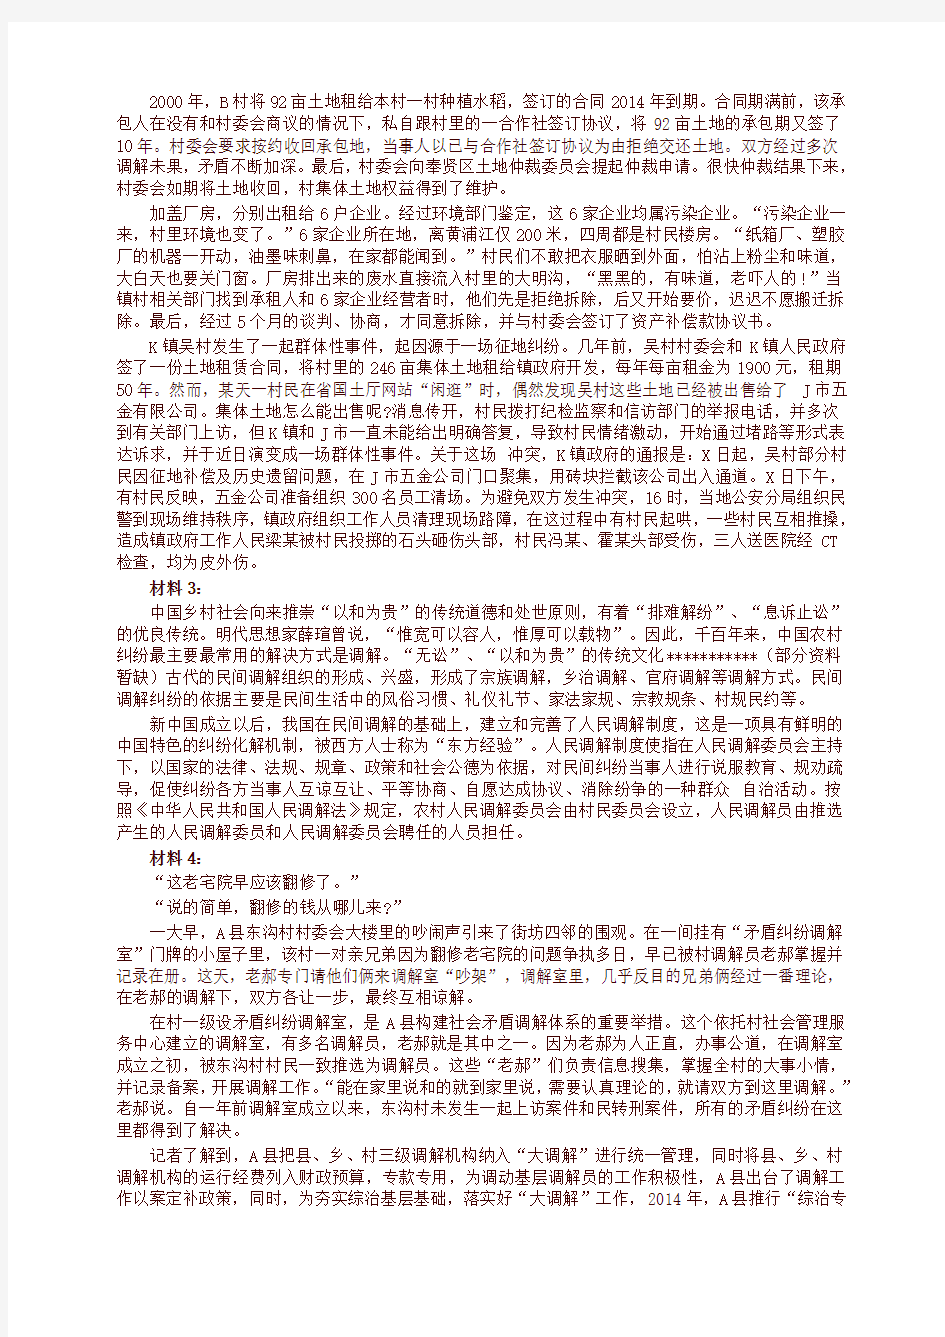 2016年黑龙江公务员考试申论真题及解析(县乡)(新)